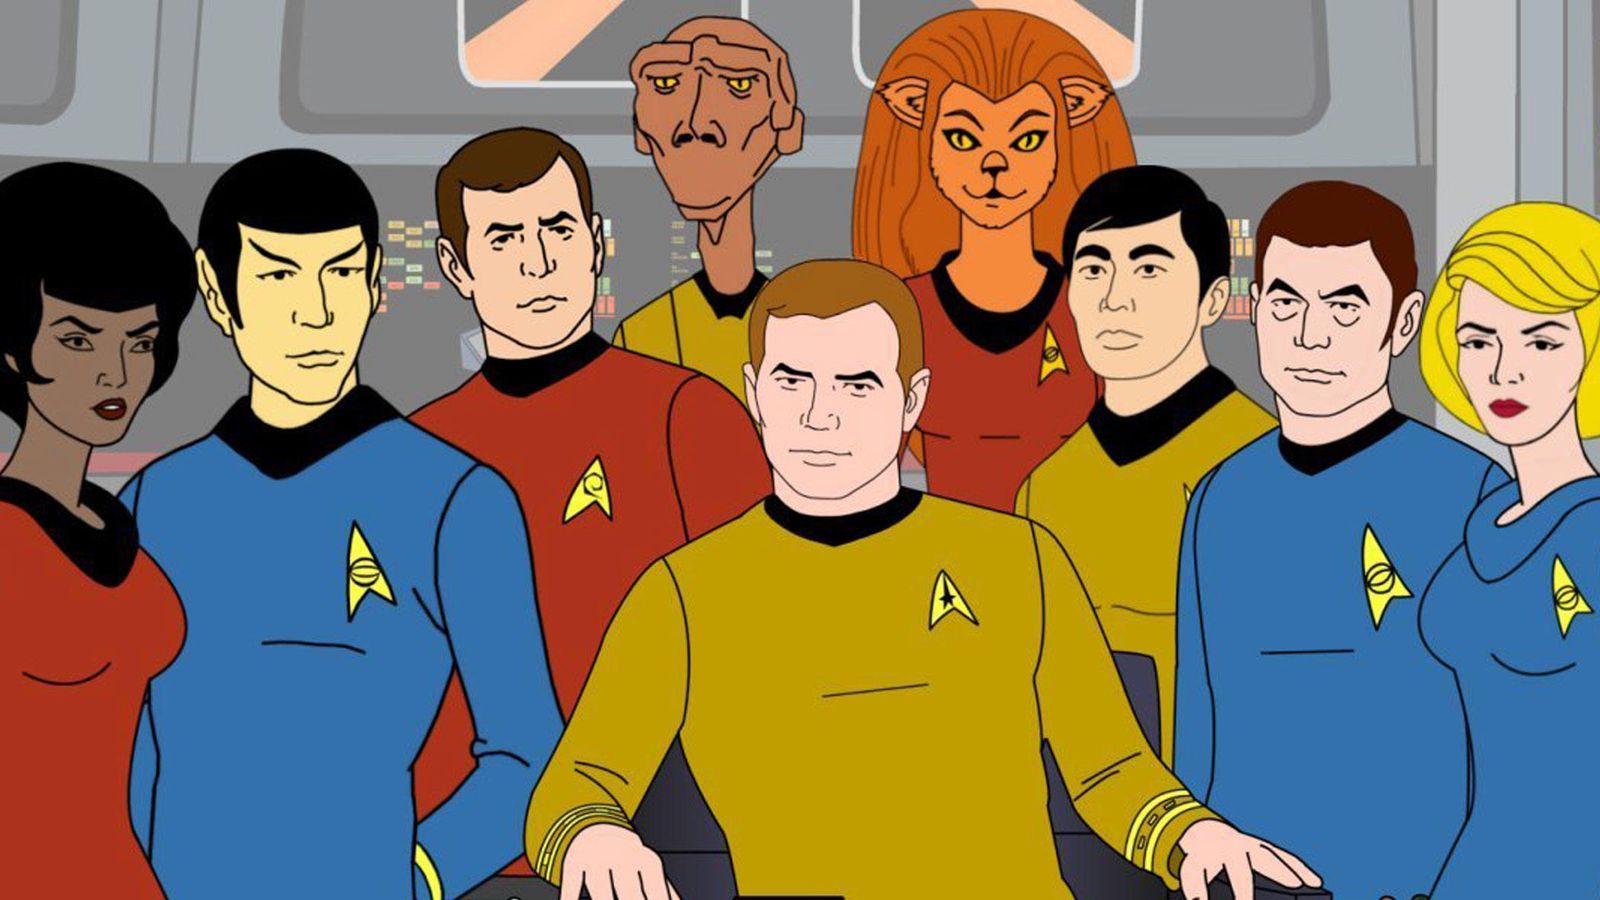 Star Trek ganhará nova série de animação no CBS All Access